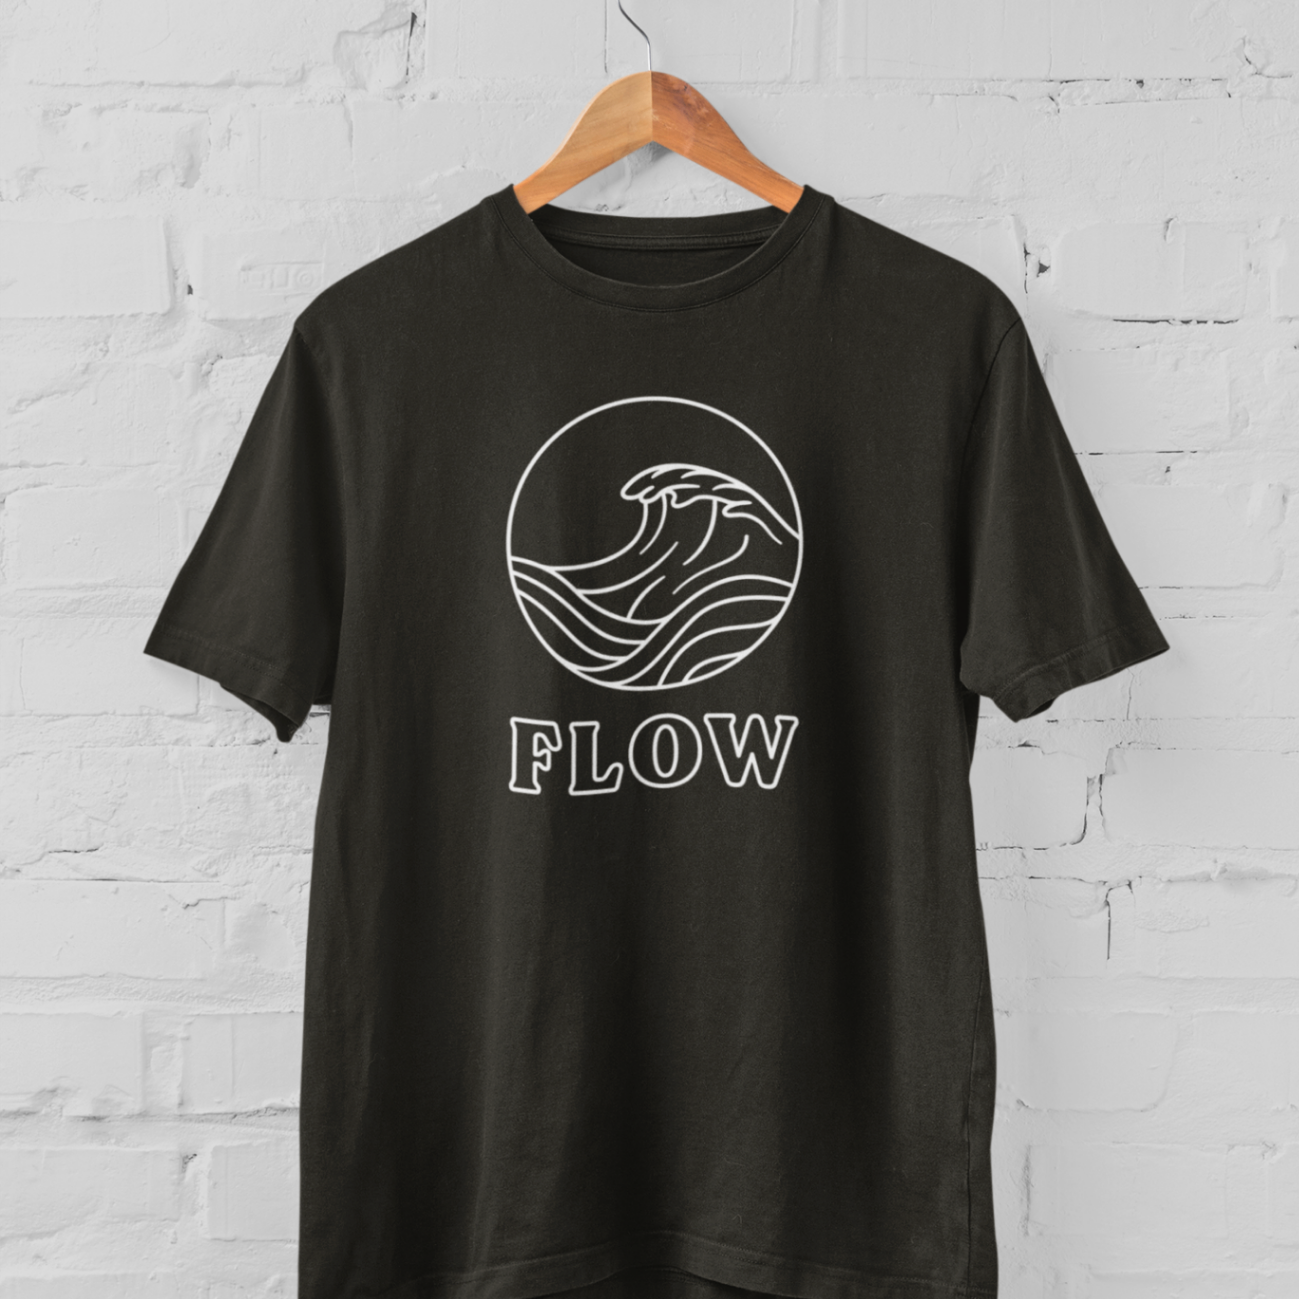  Black t-shirt 'Flow' design line only mockup